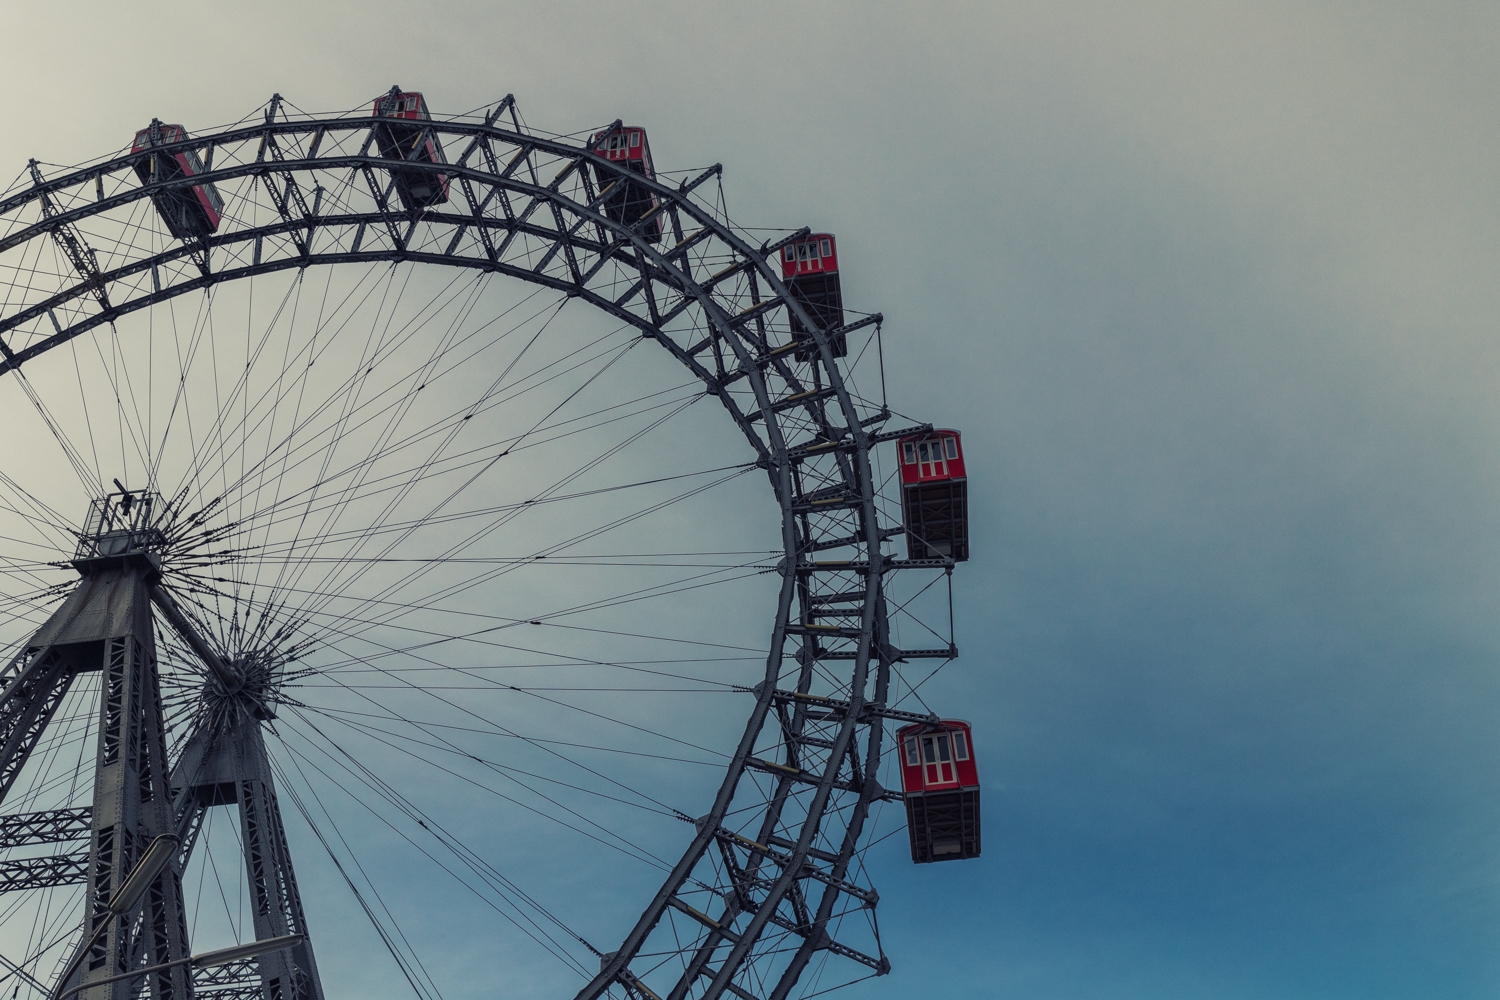 The Vienna Giant Ferris Wheel /01